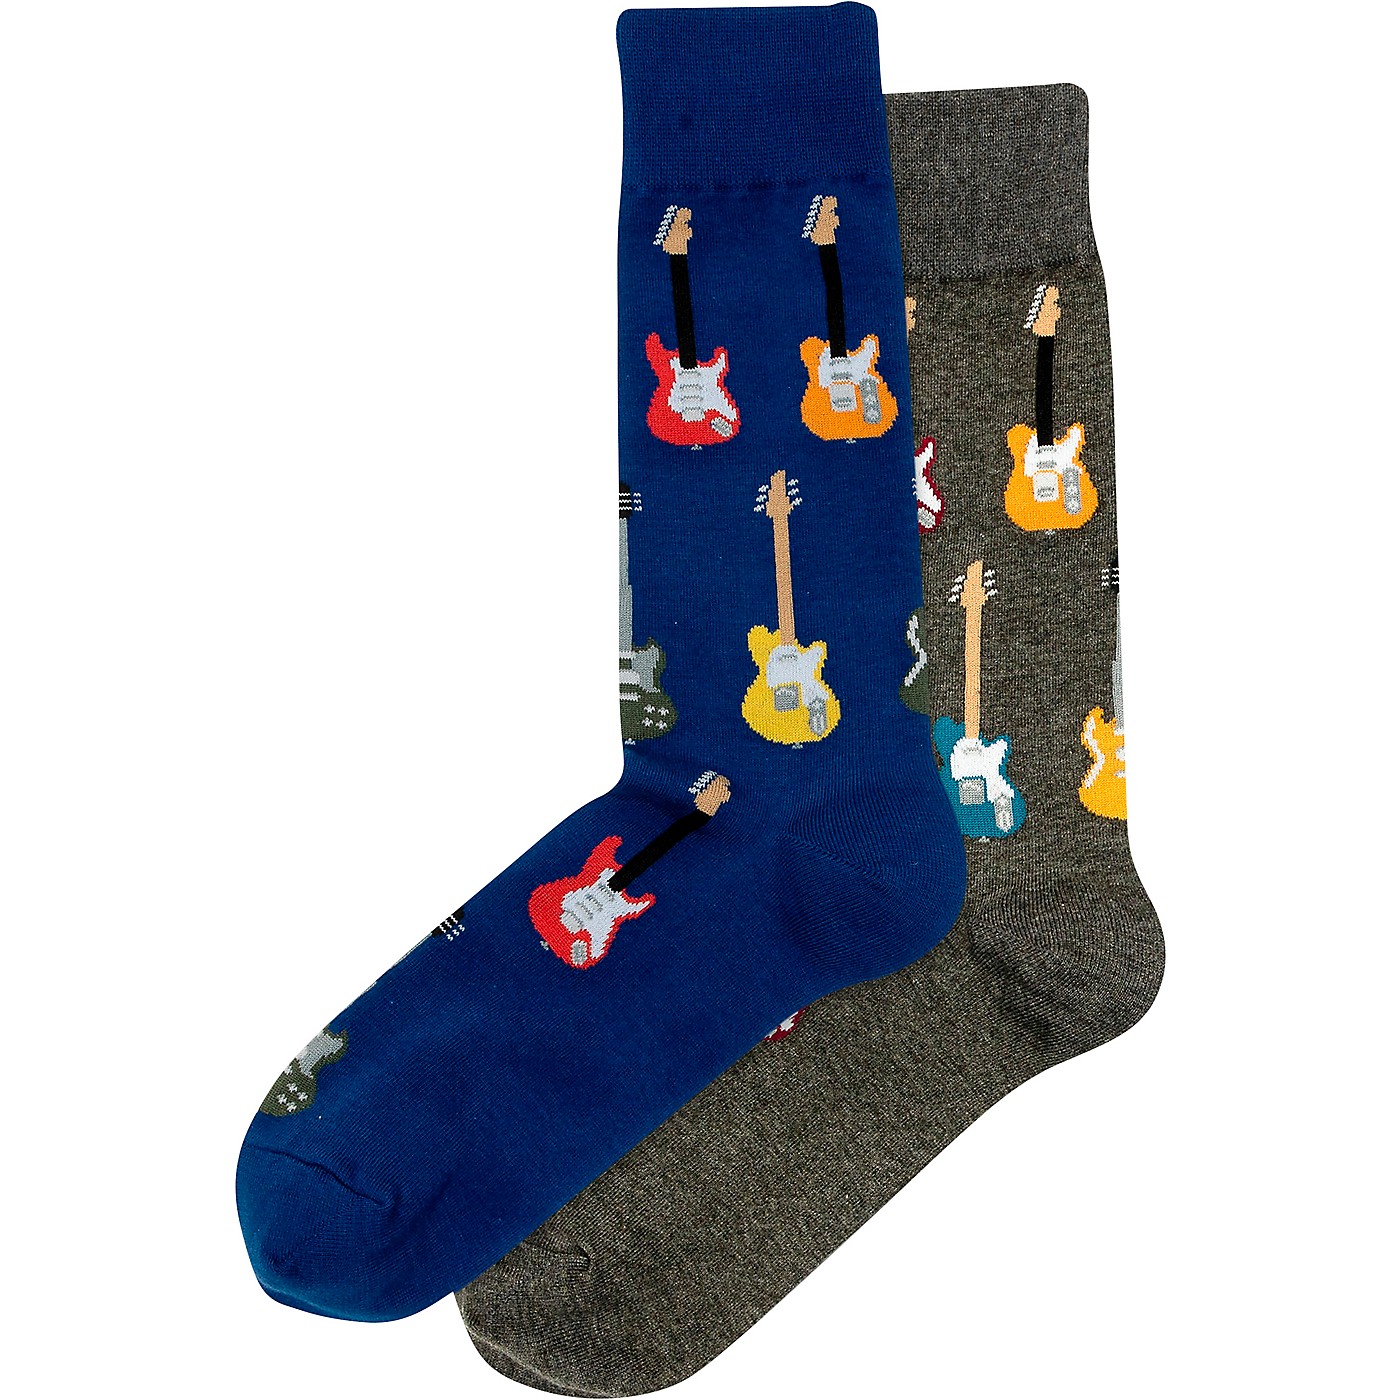 Hot Sox Guitars Crew Socks, 2 Pairs thumbnail